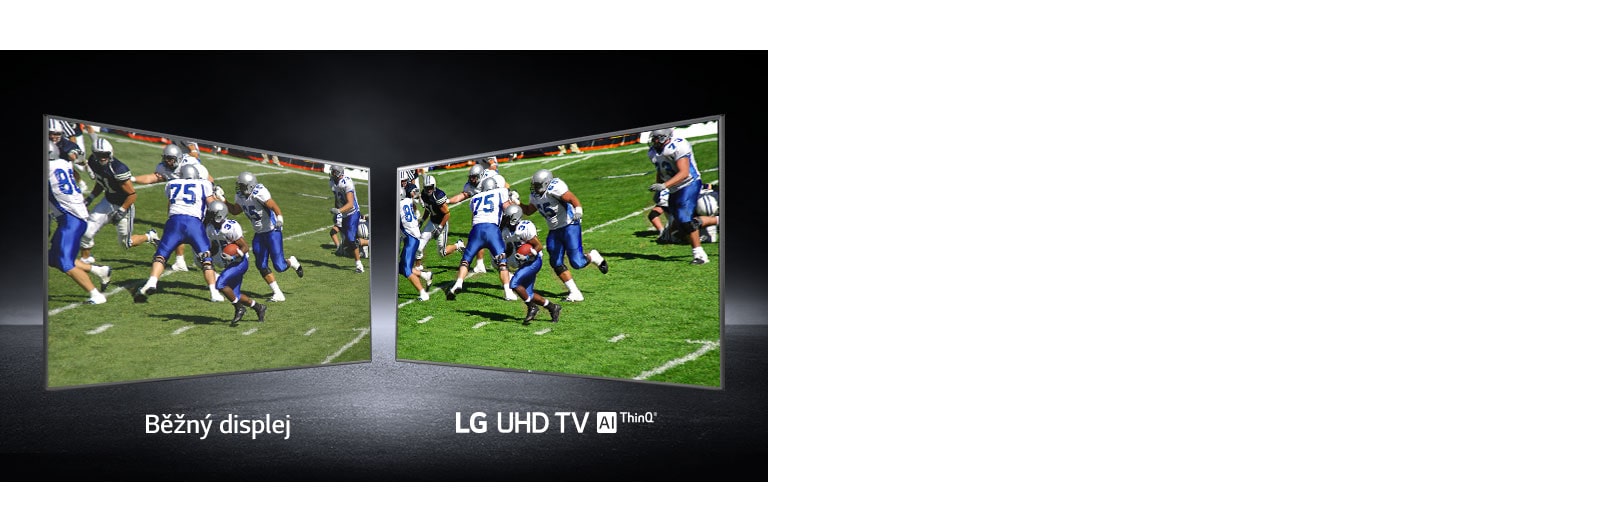 Zobrazení obrázku hráčů amerického fotbalu na hřišti. Jedno je na běžné obrazovce a druhé na televizoru UHD.